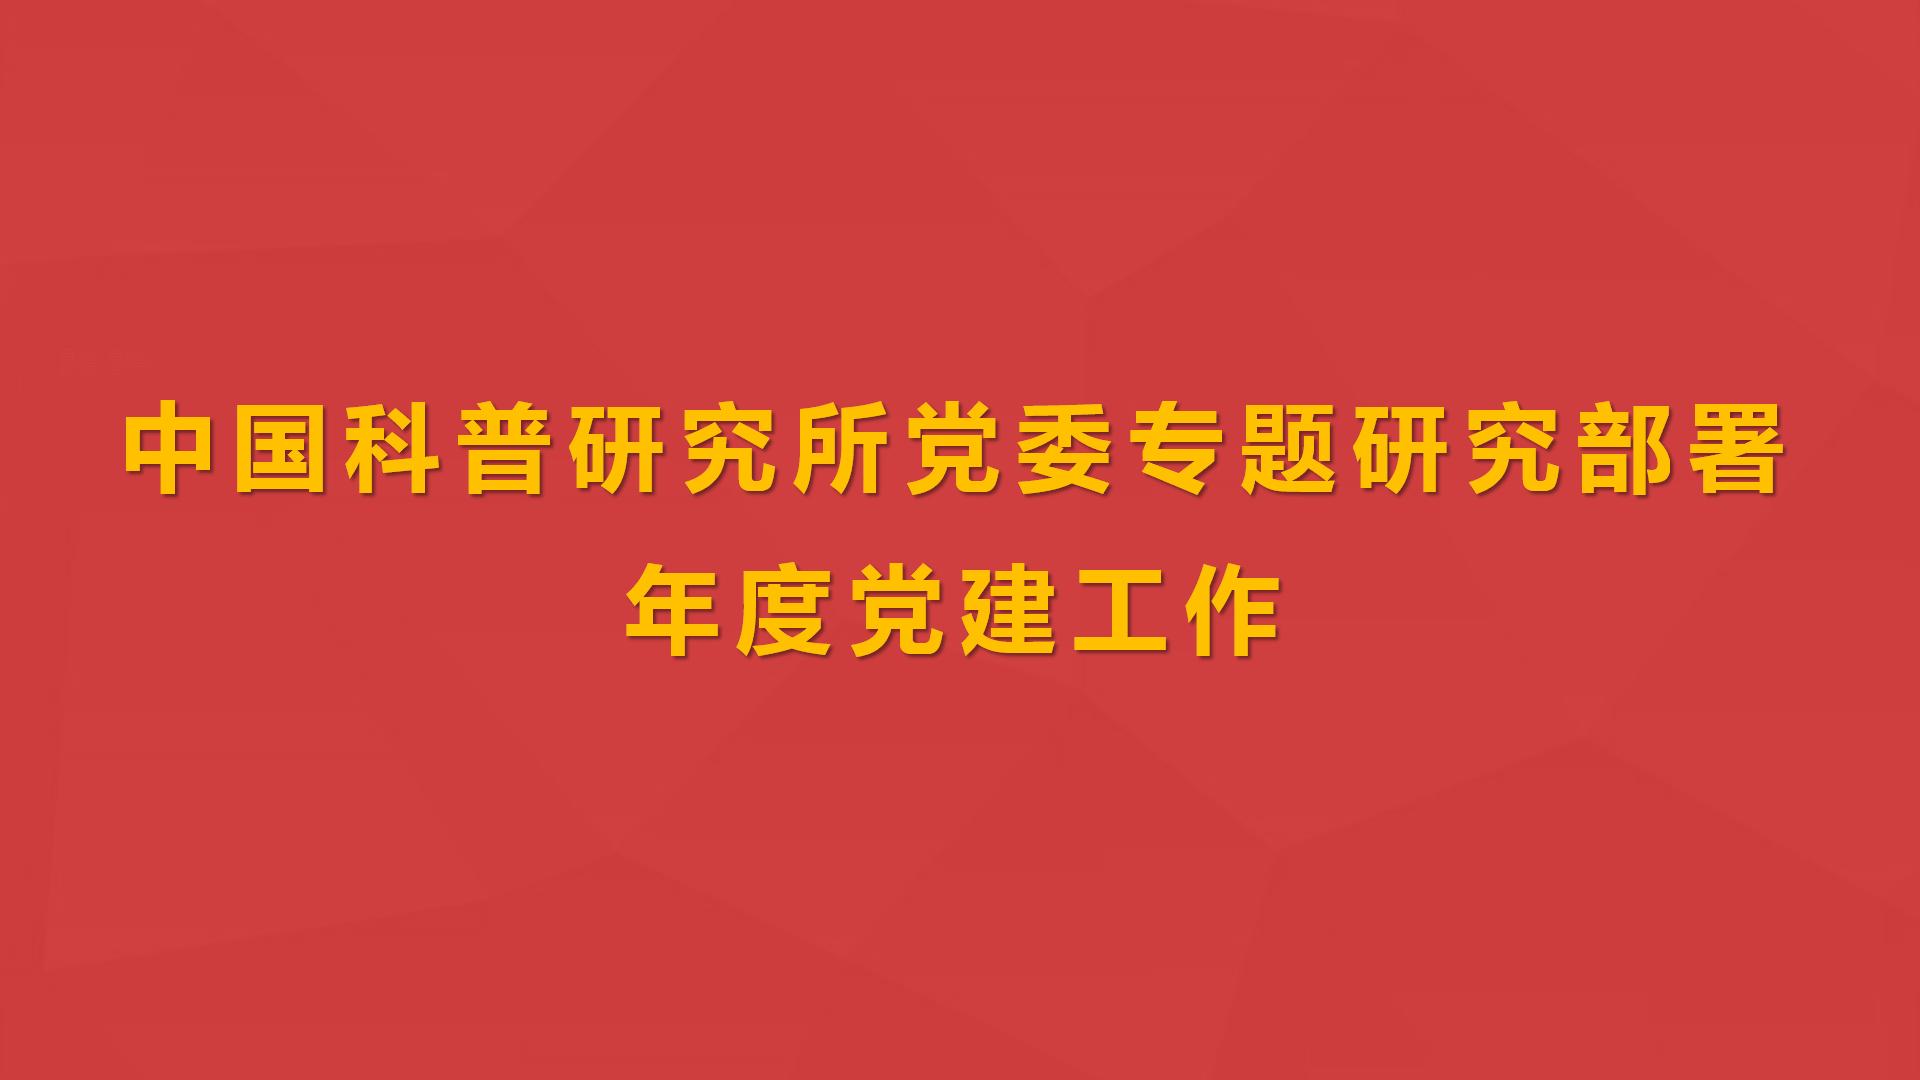 中国科普研究所党委专题研究部署年度党建工作